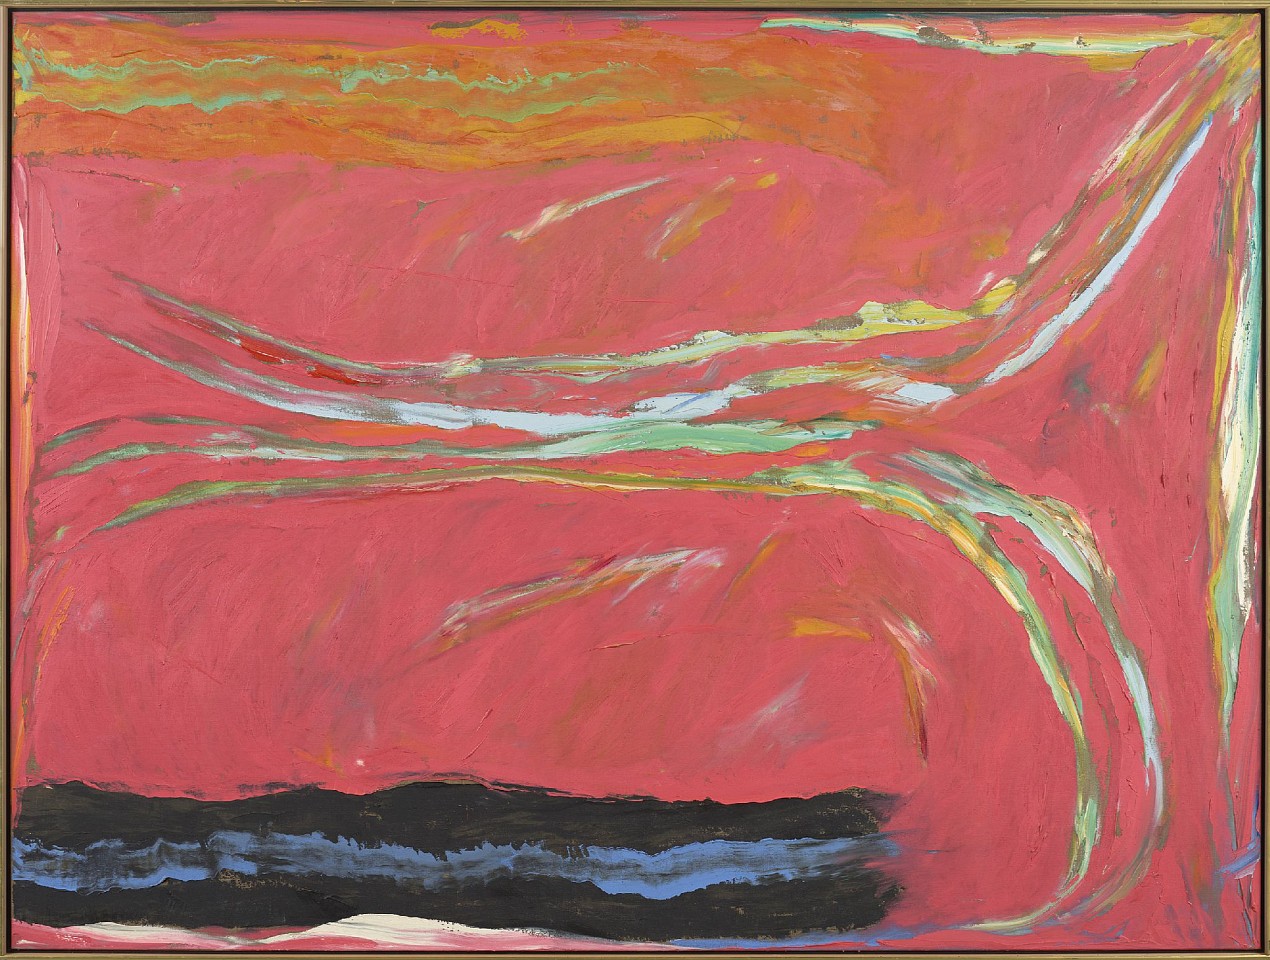 Stanley Boxer, Noonspushedpeachgrasp, 1975
Oil on linen, 60 x 80 in. (152.4 x 203.2 cm)
BOX-00117